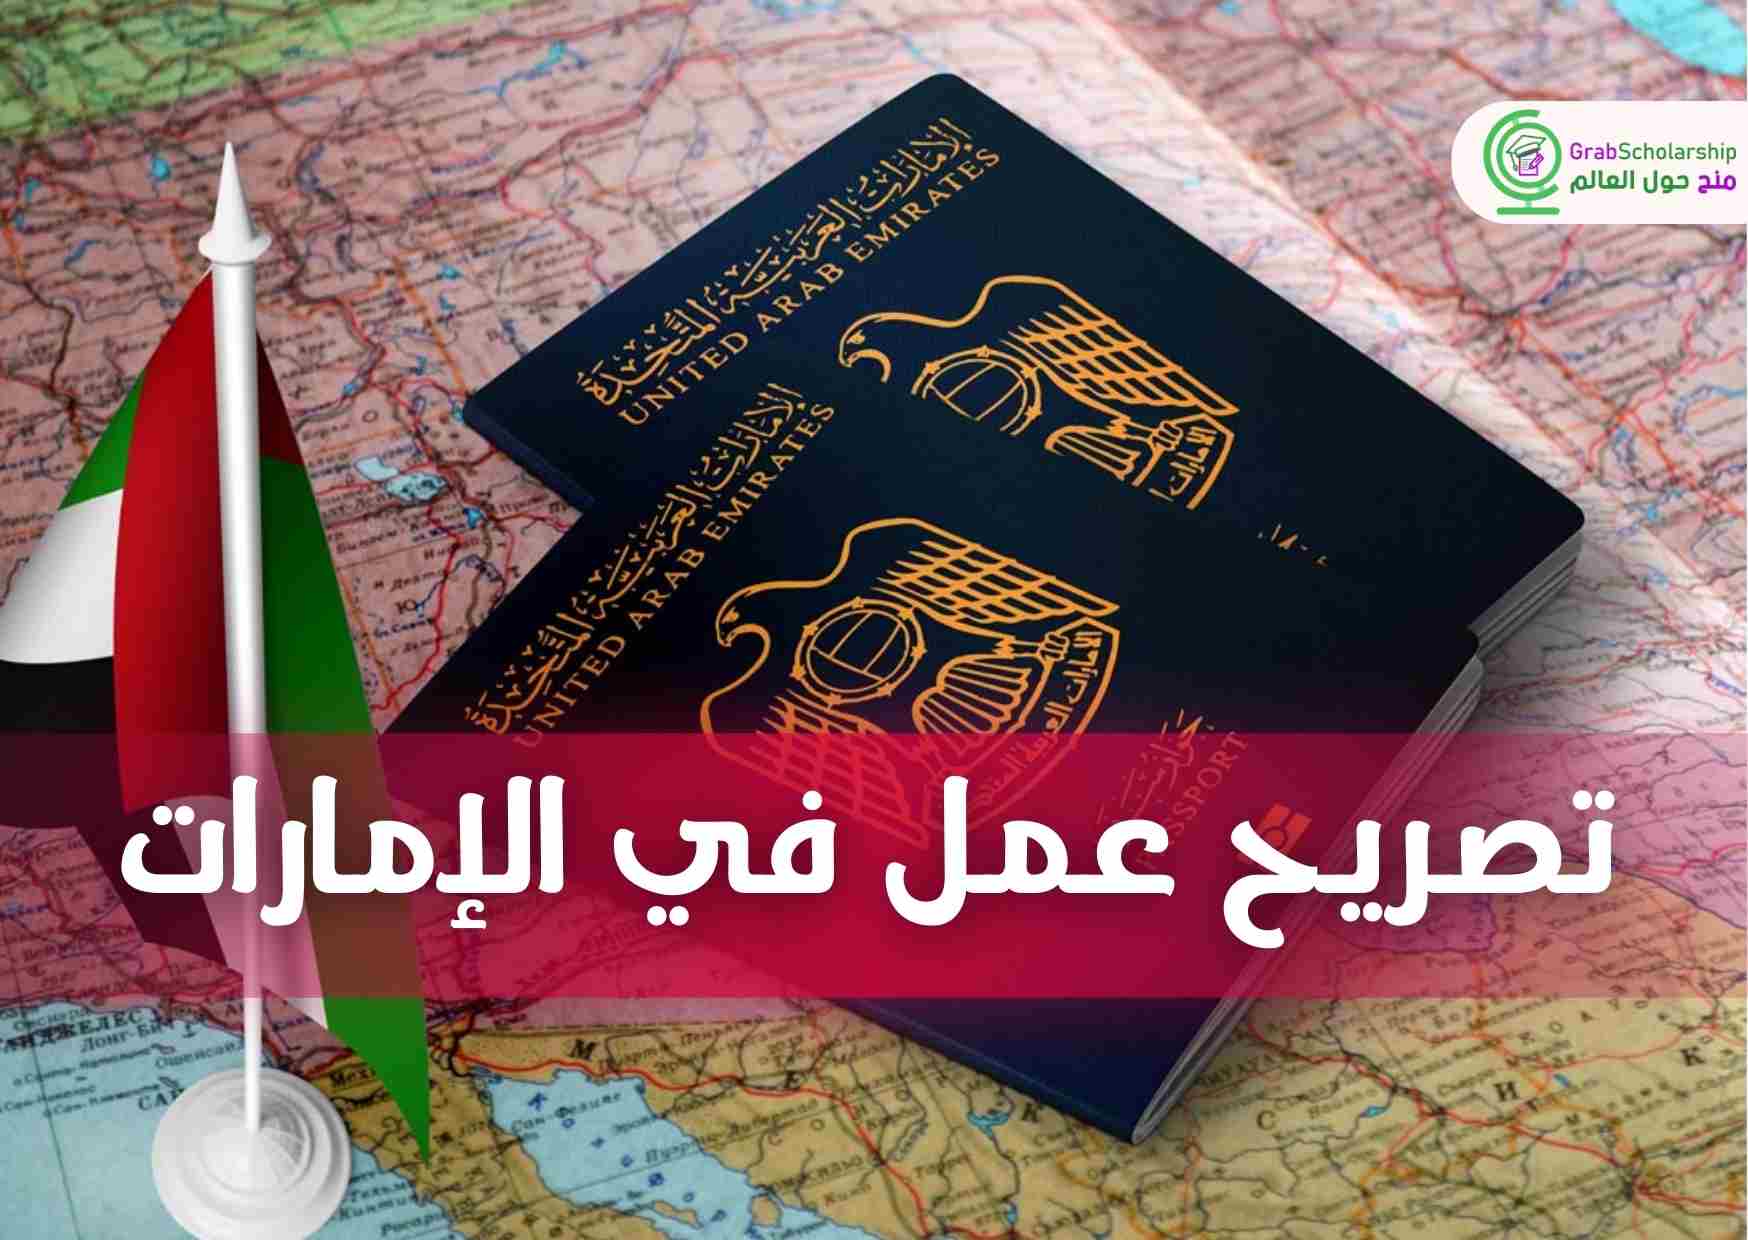 تصريح عمل في الإمارات شامل تذاكر السفر والسكن مجانا